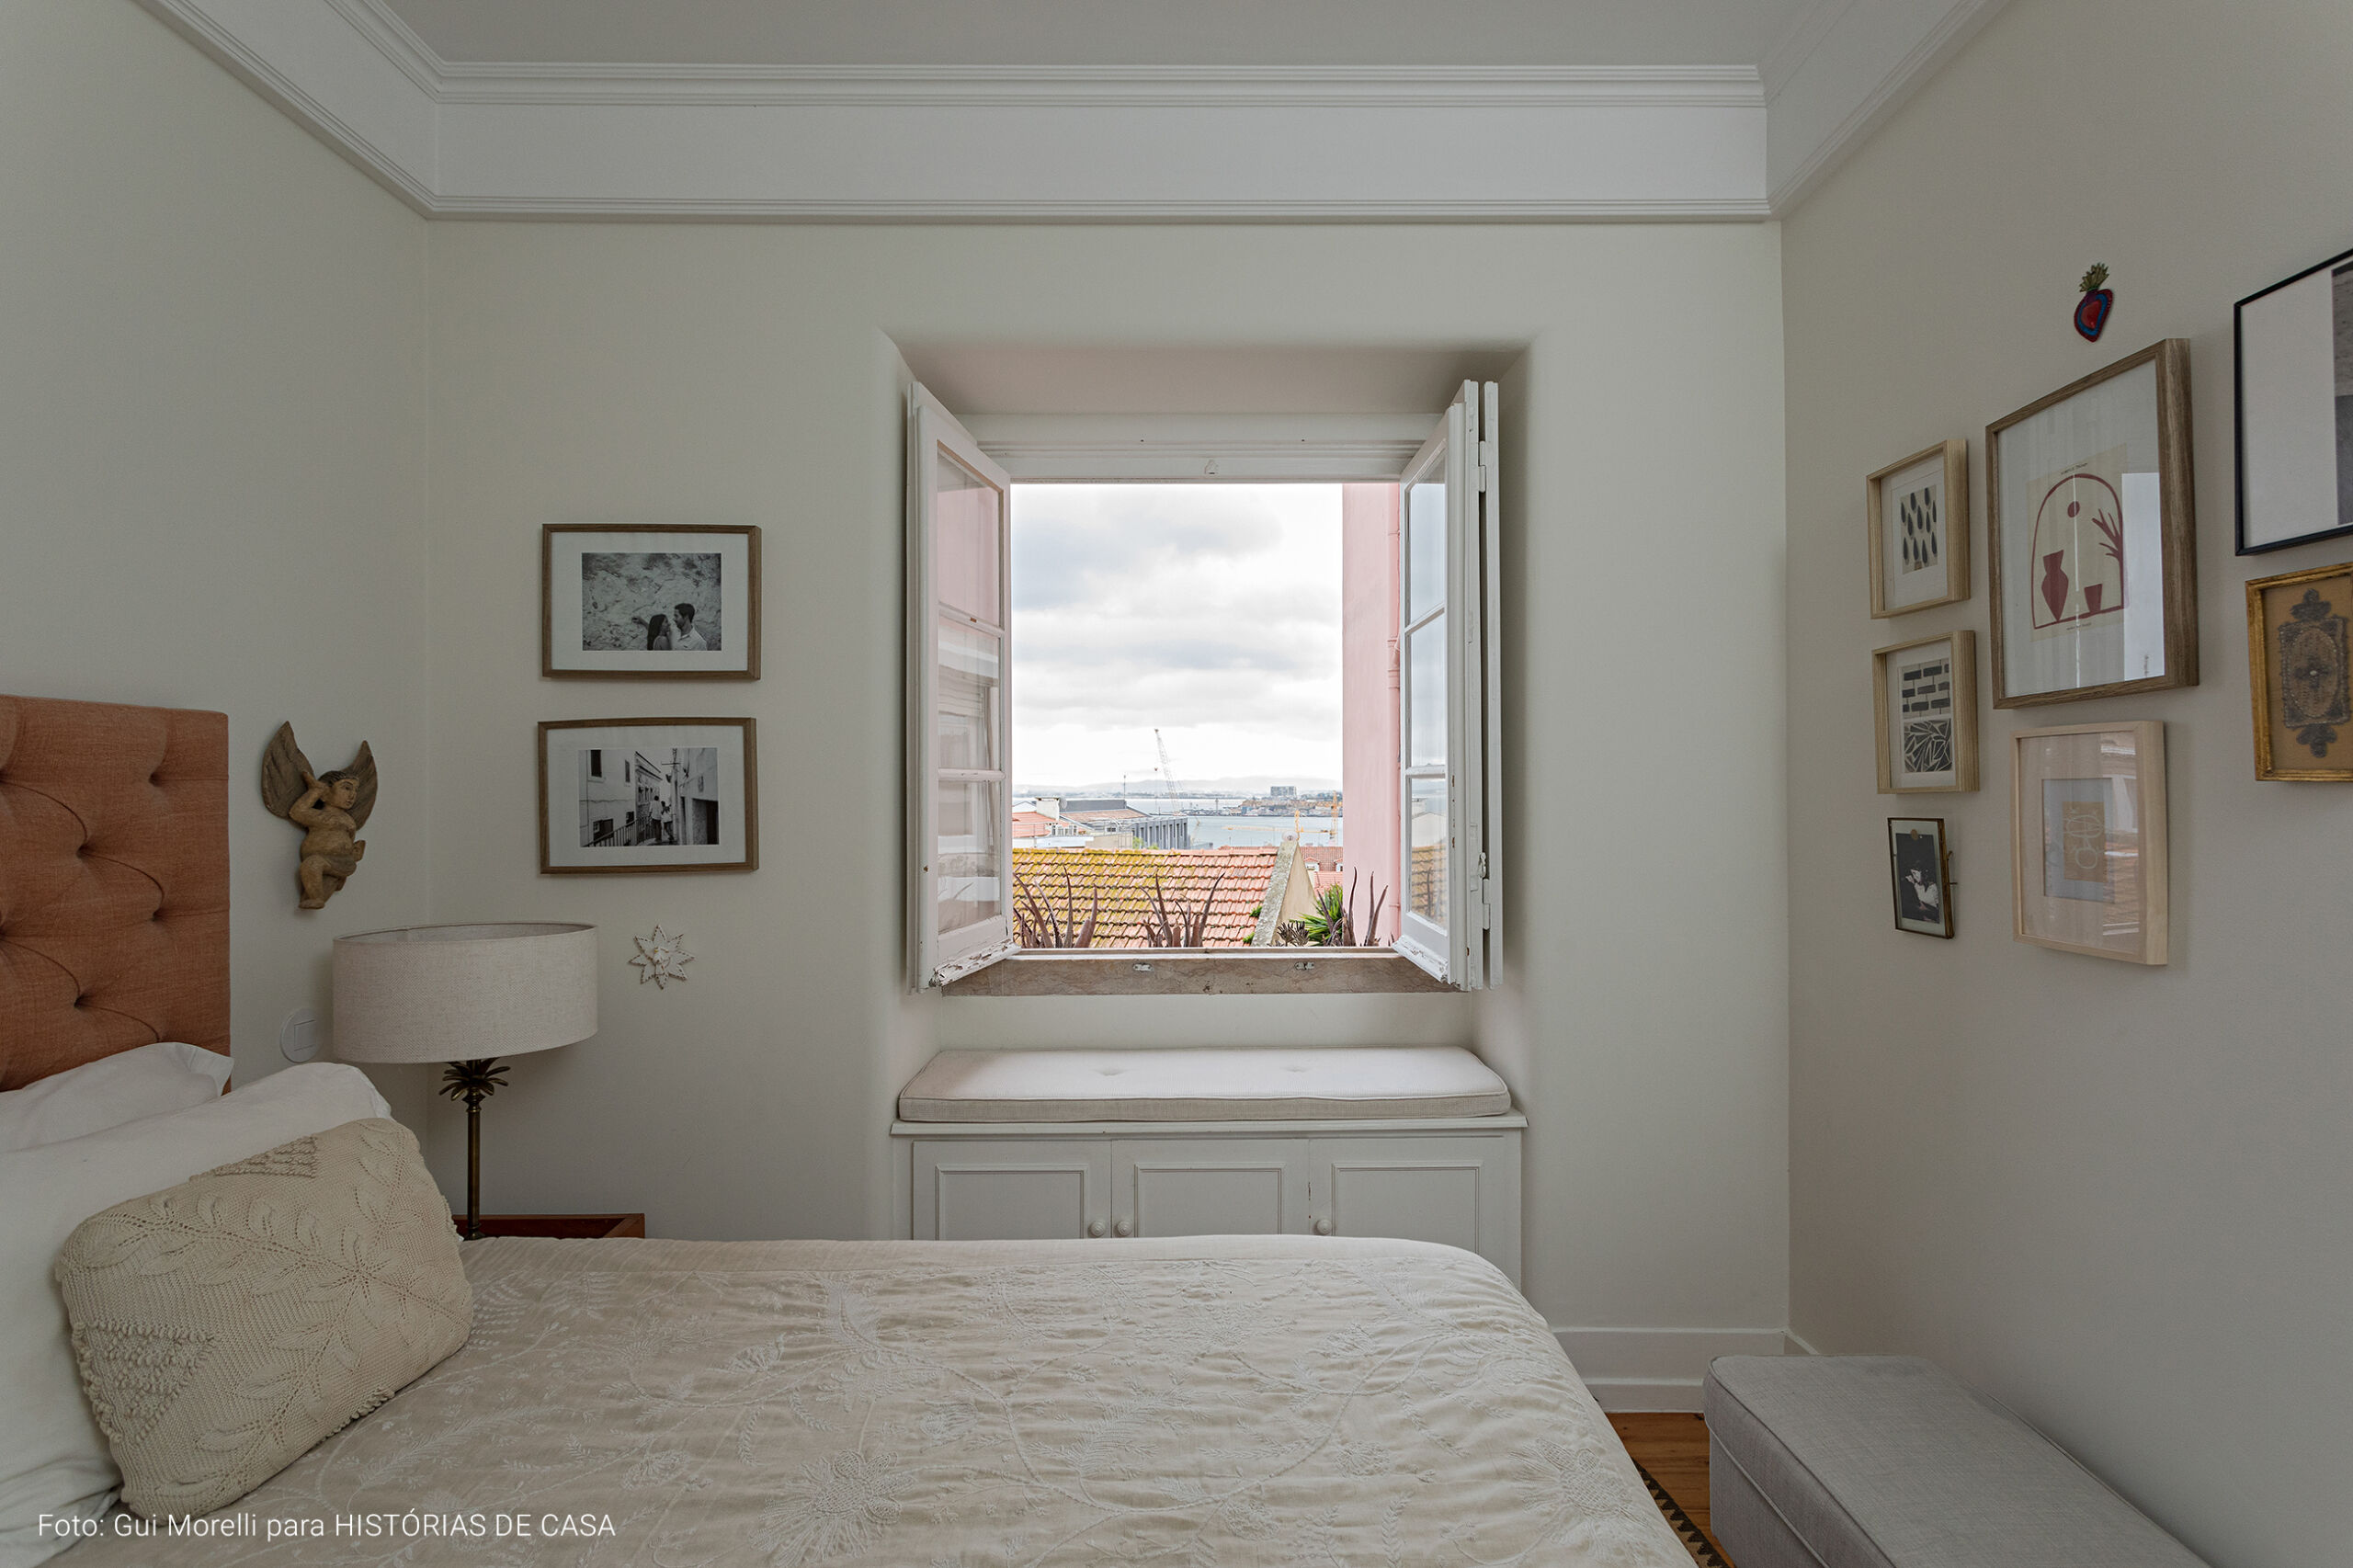 Apartamento com decoração clean e afetiva em Portugal